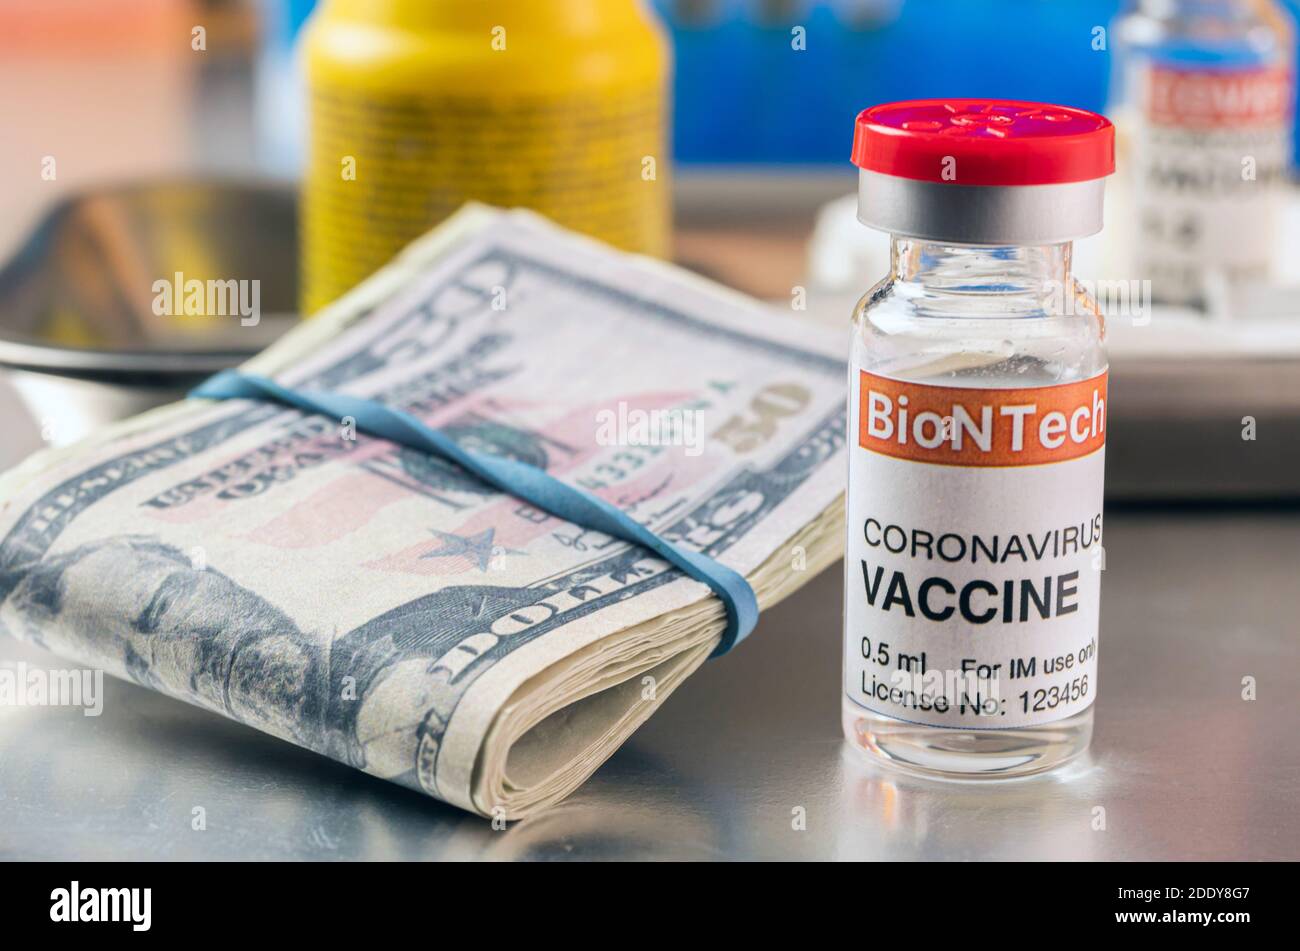 Vaccin contre le coronavirus Covid-19 pour le plan de vaccination avec billets de banque, image conceptuelle, traitement expérimental récréatif fictif Banque D'Images